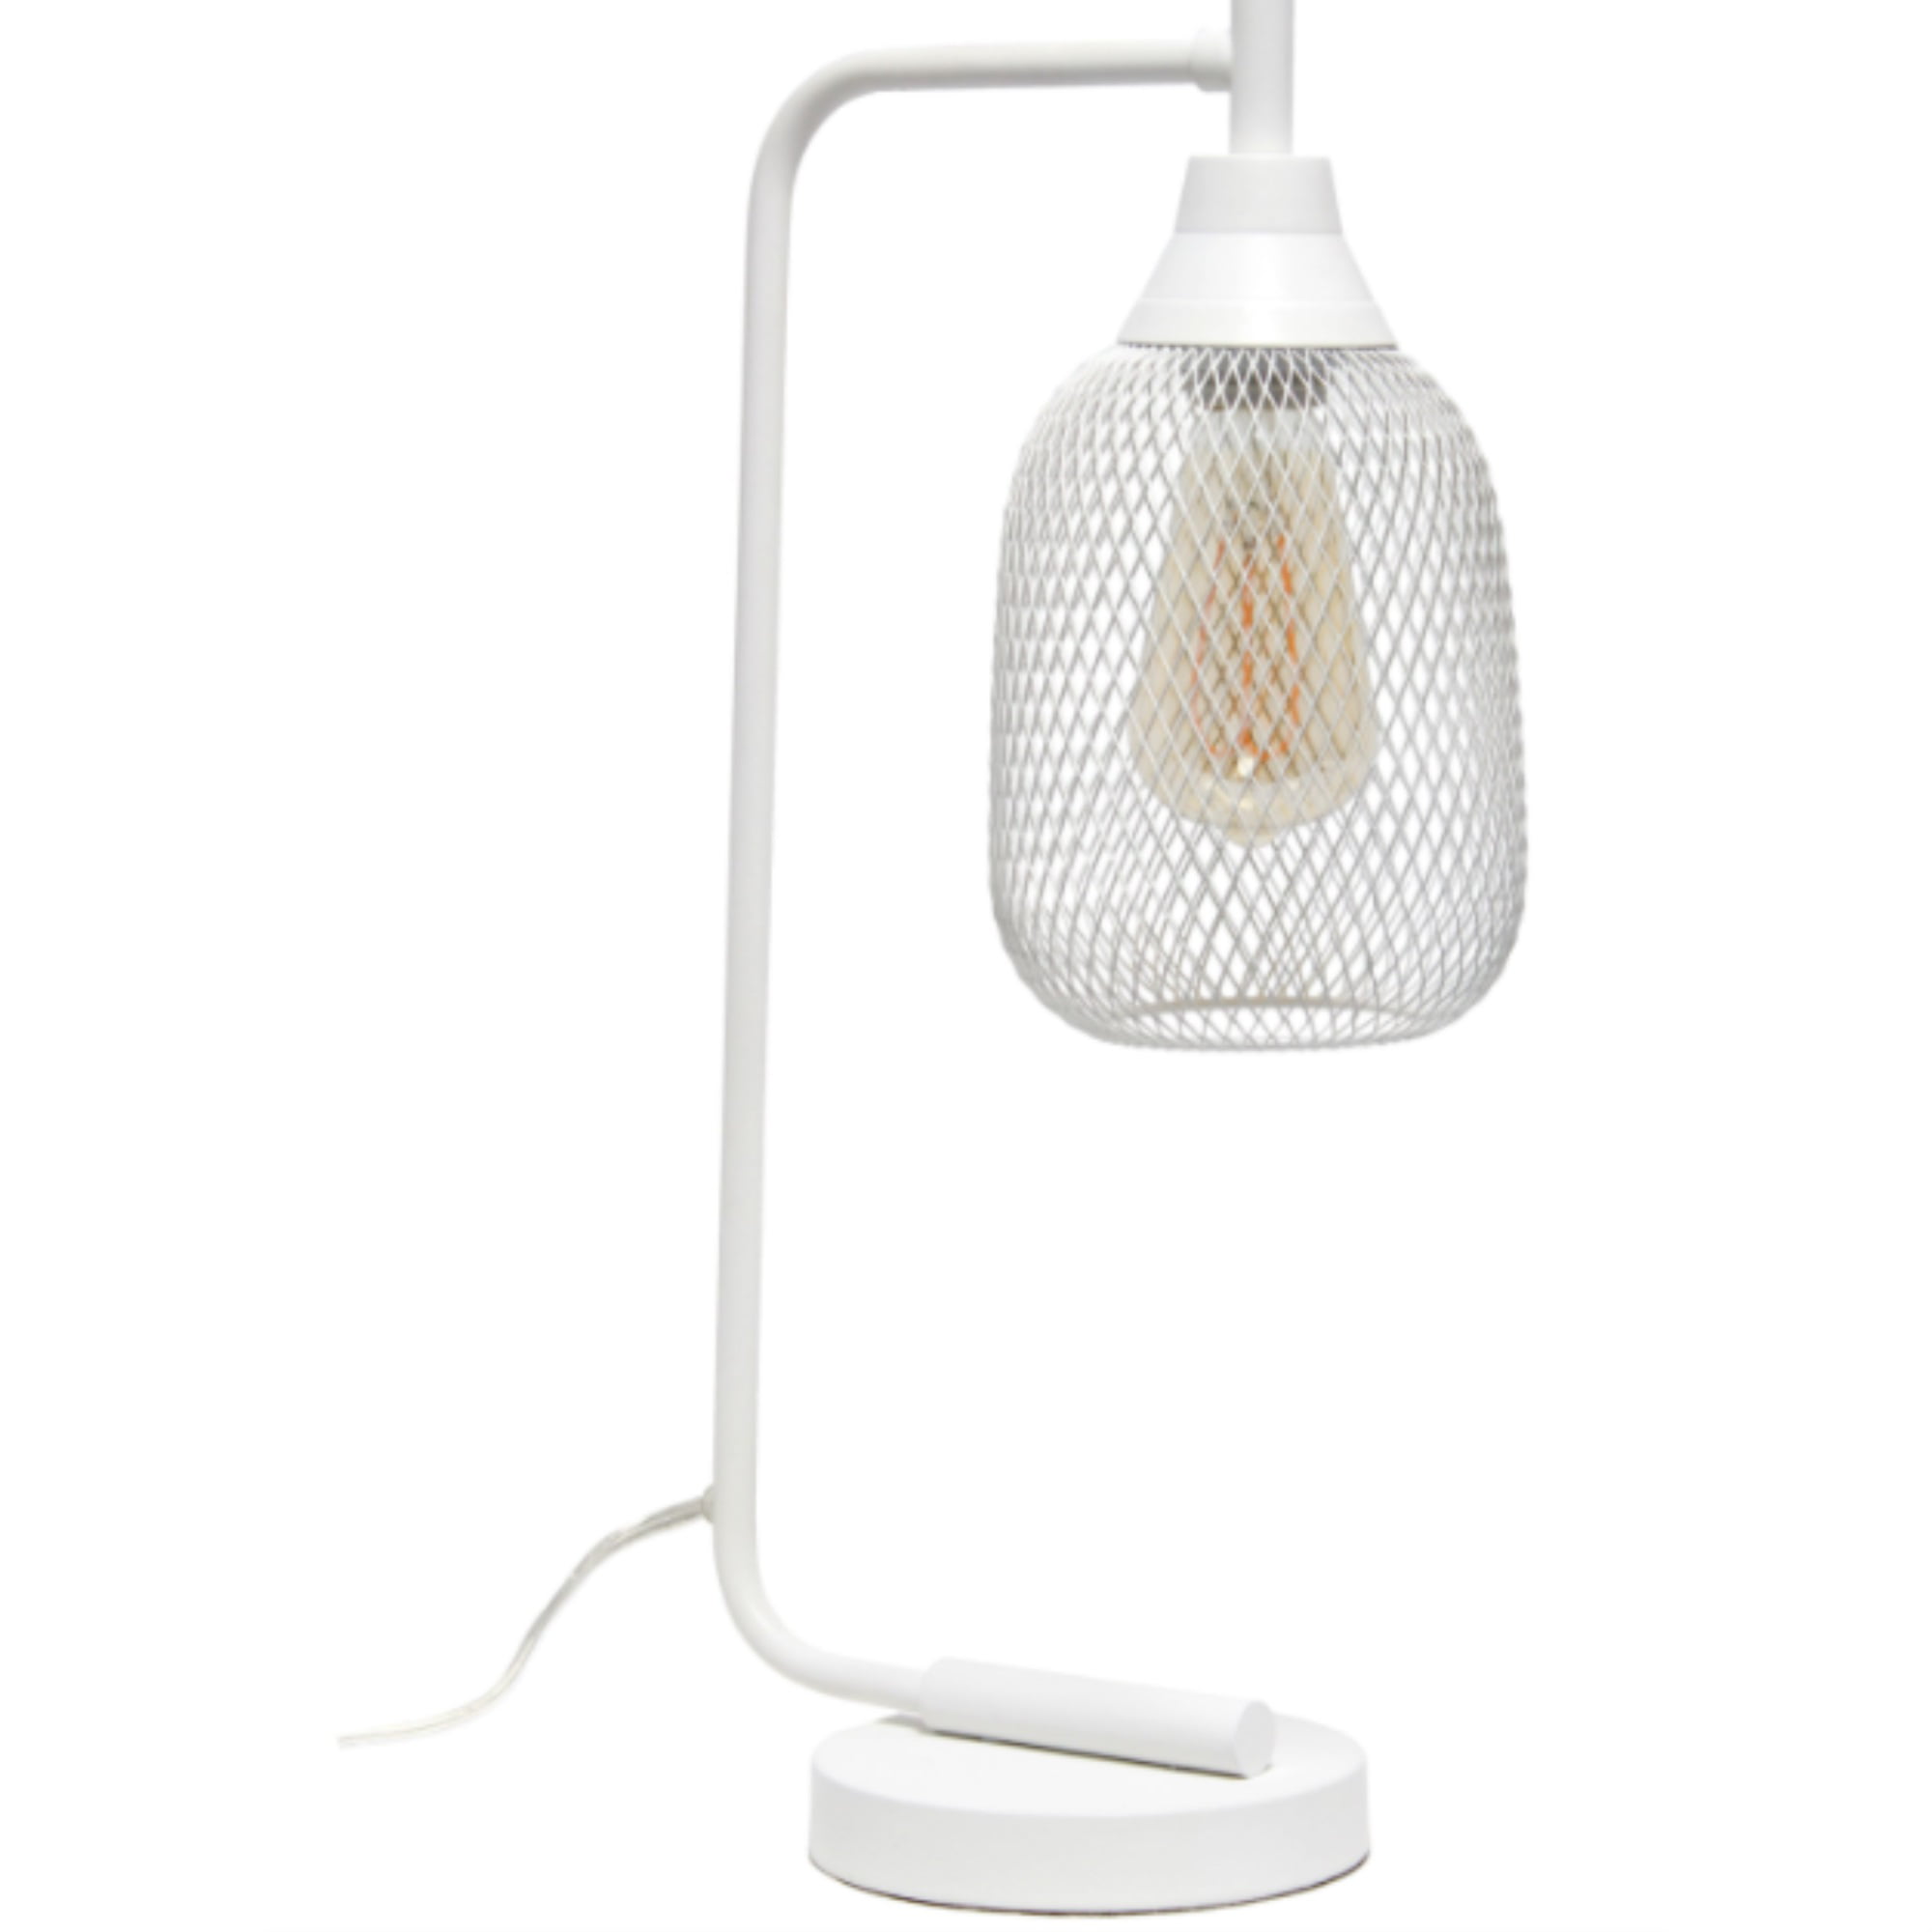 Lalia Home Industrial Mesh Desk Lamp, White